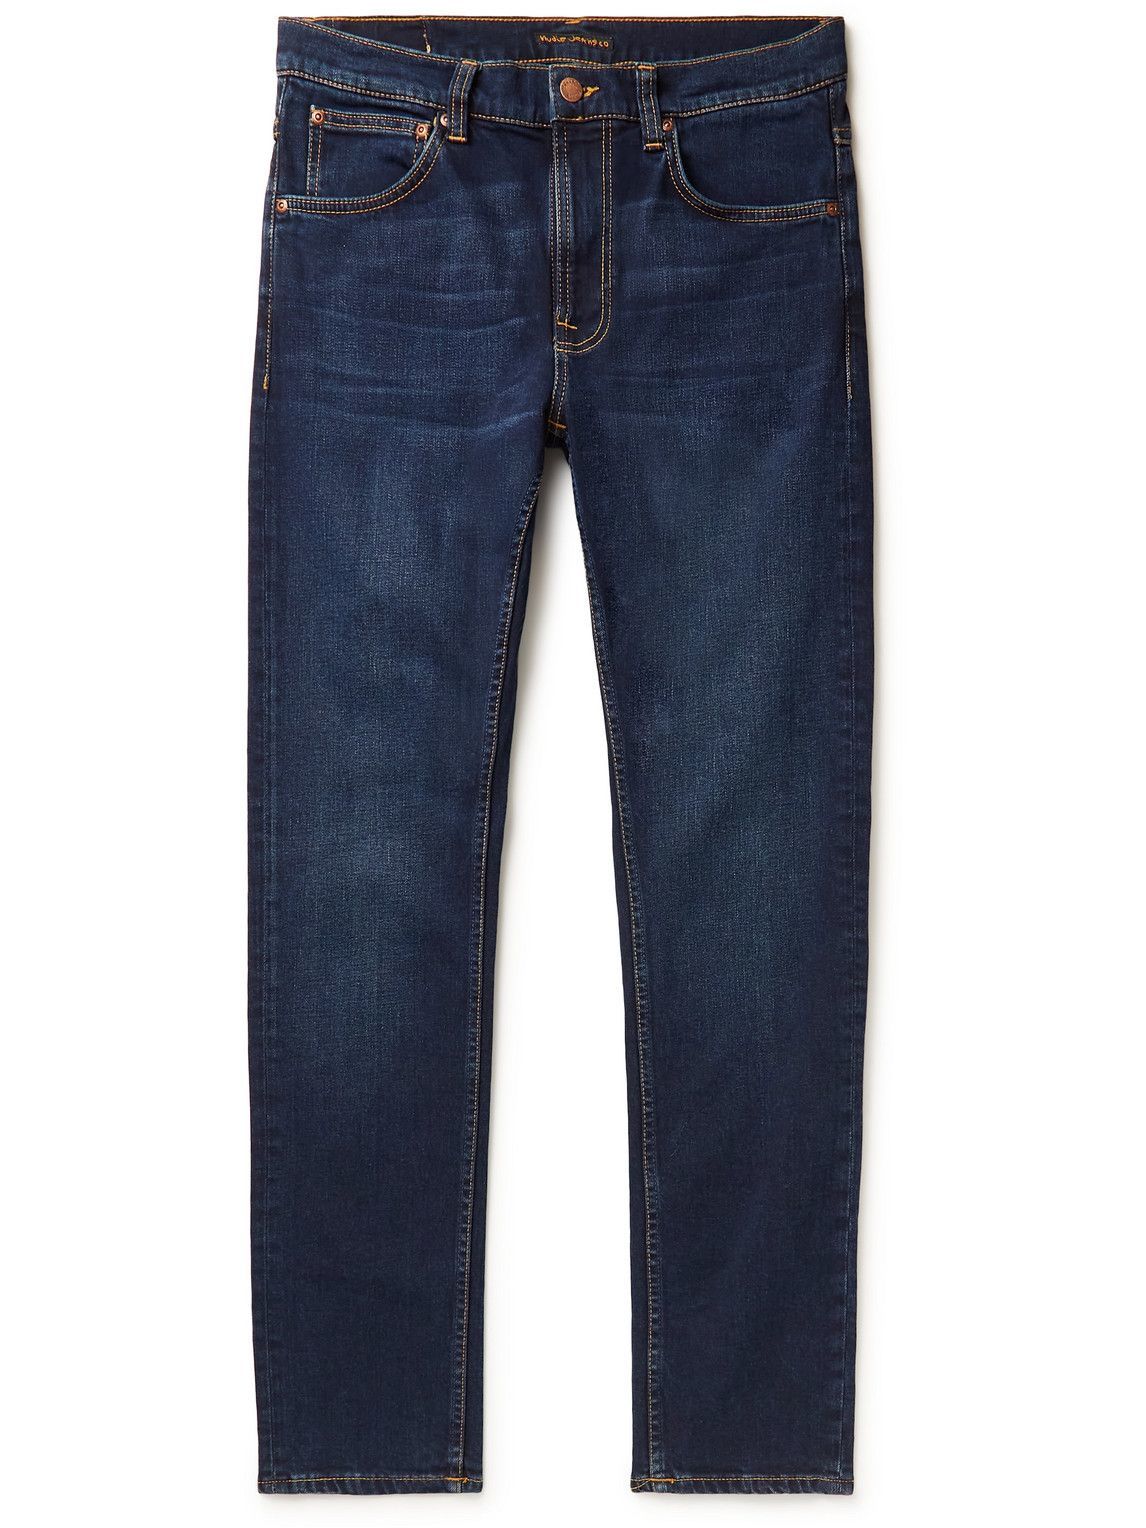 Nudie Jeans - Lean Dean Slim-Fit Organic Jeans - Blue Nudie Jeans Co